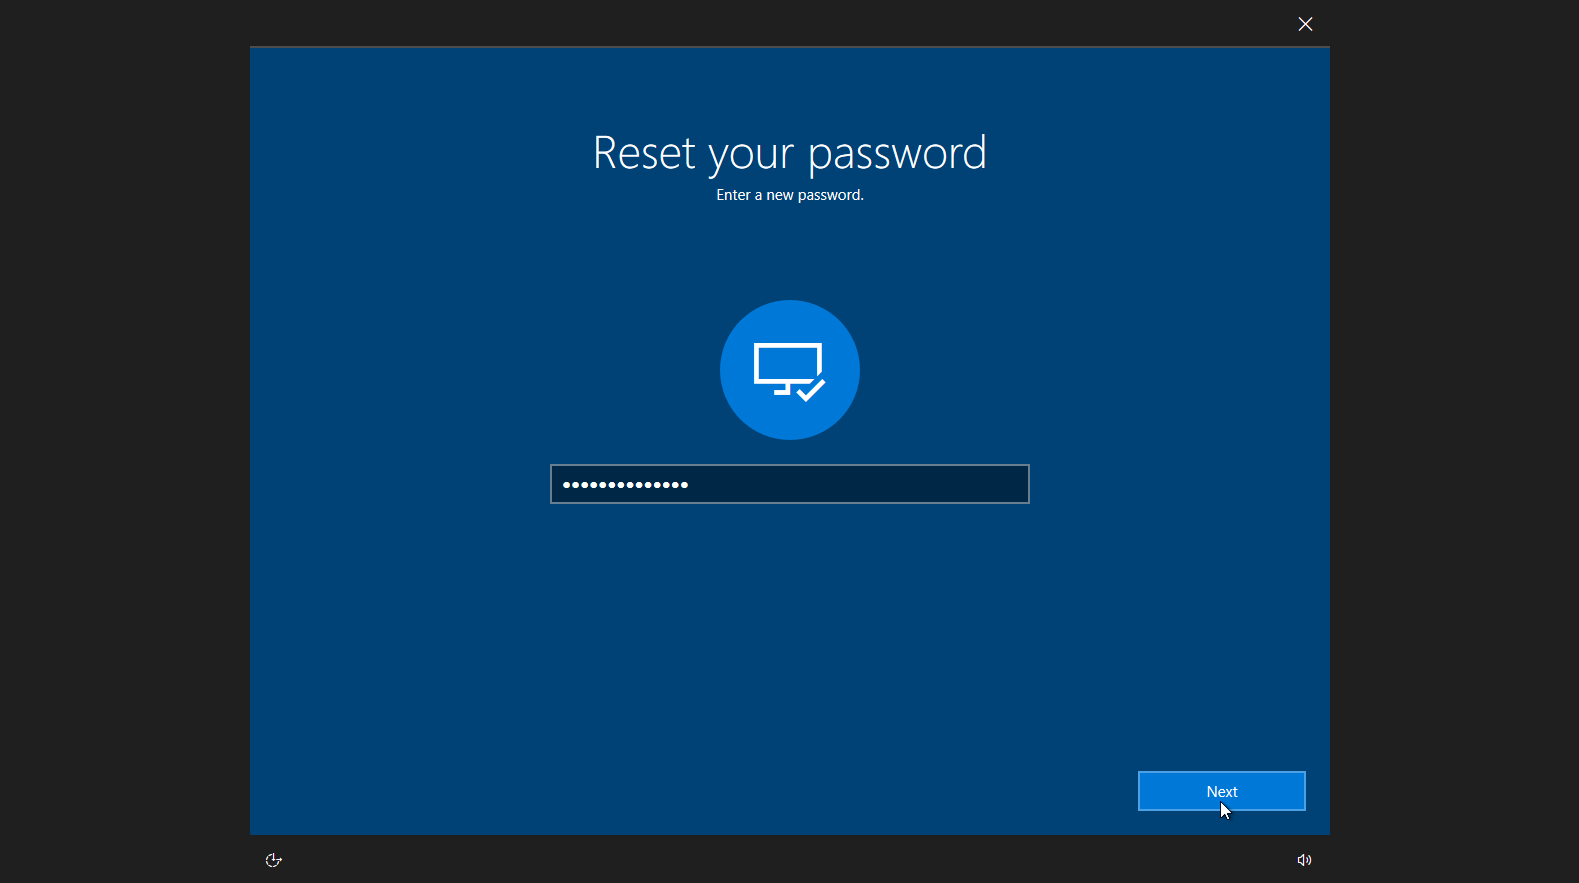 Reset password link at Windows login